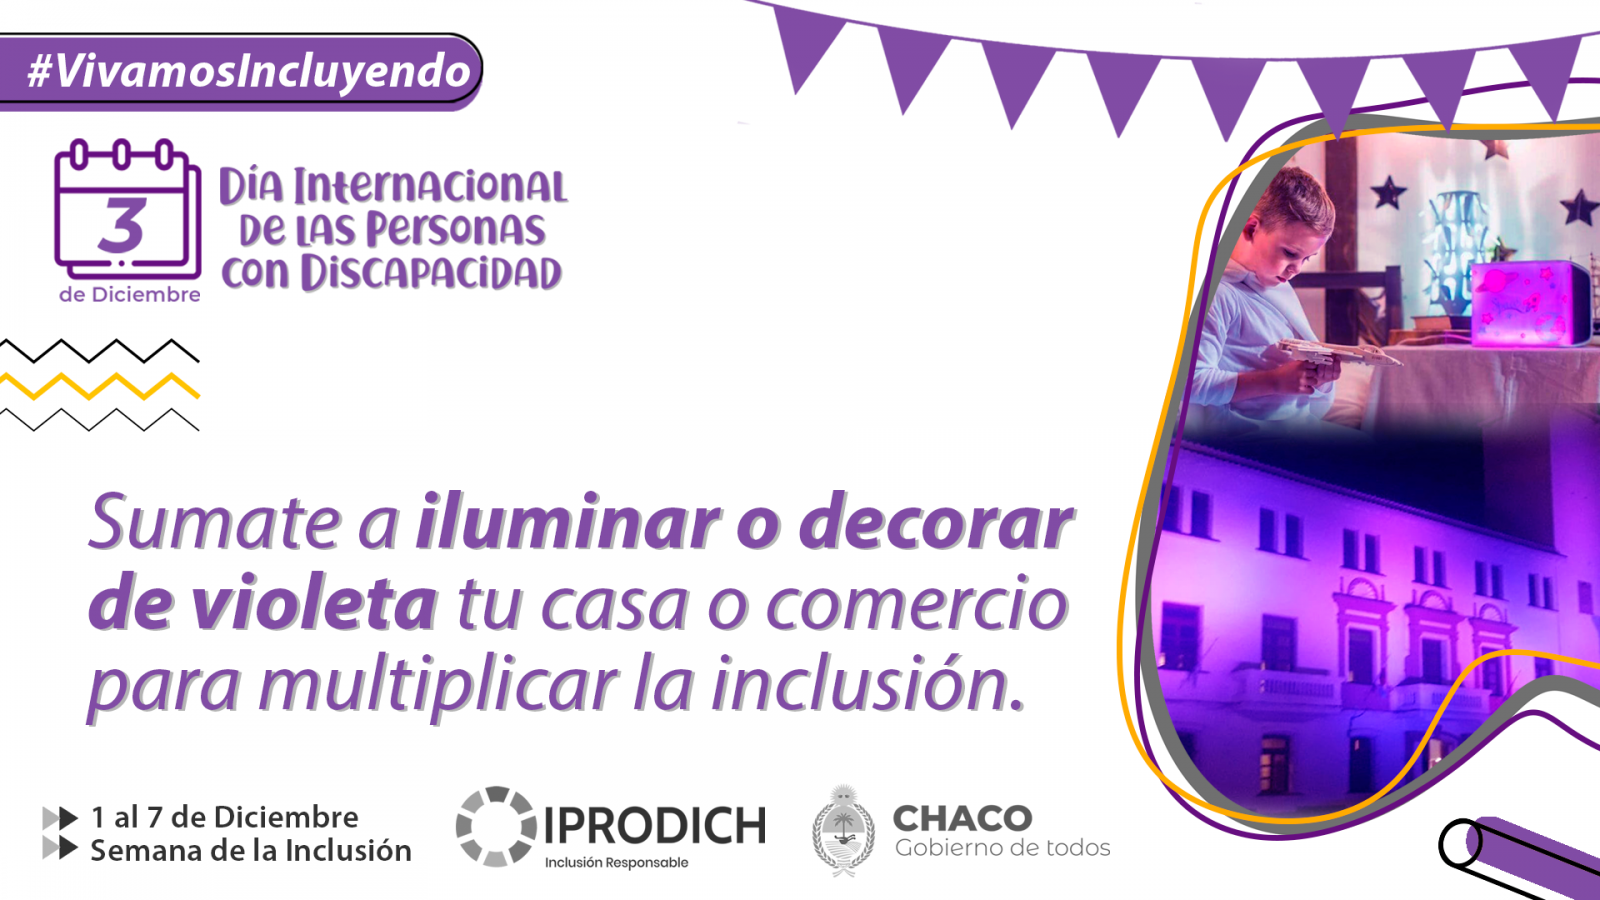 IPRODICH invita a sumarse a la campaña #VivamosIncluyendo por el Día Internacional de las Personas Con Discapacidad